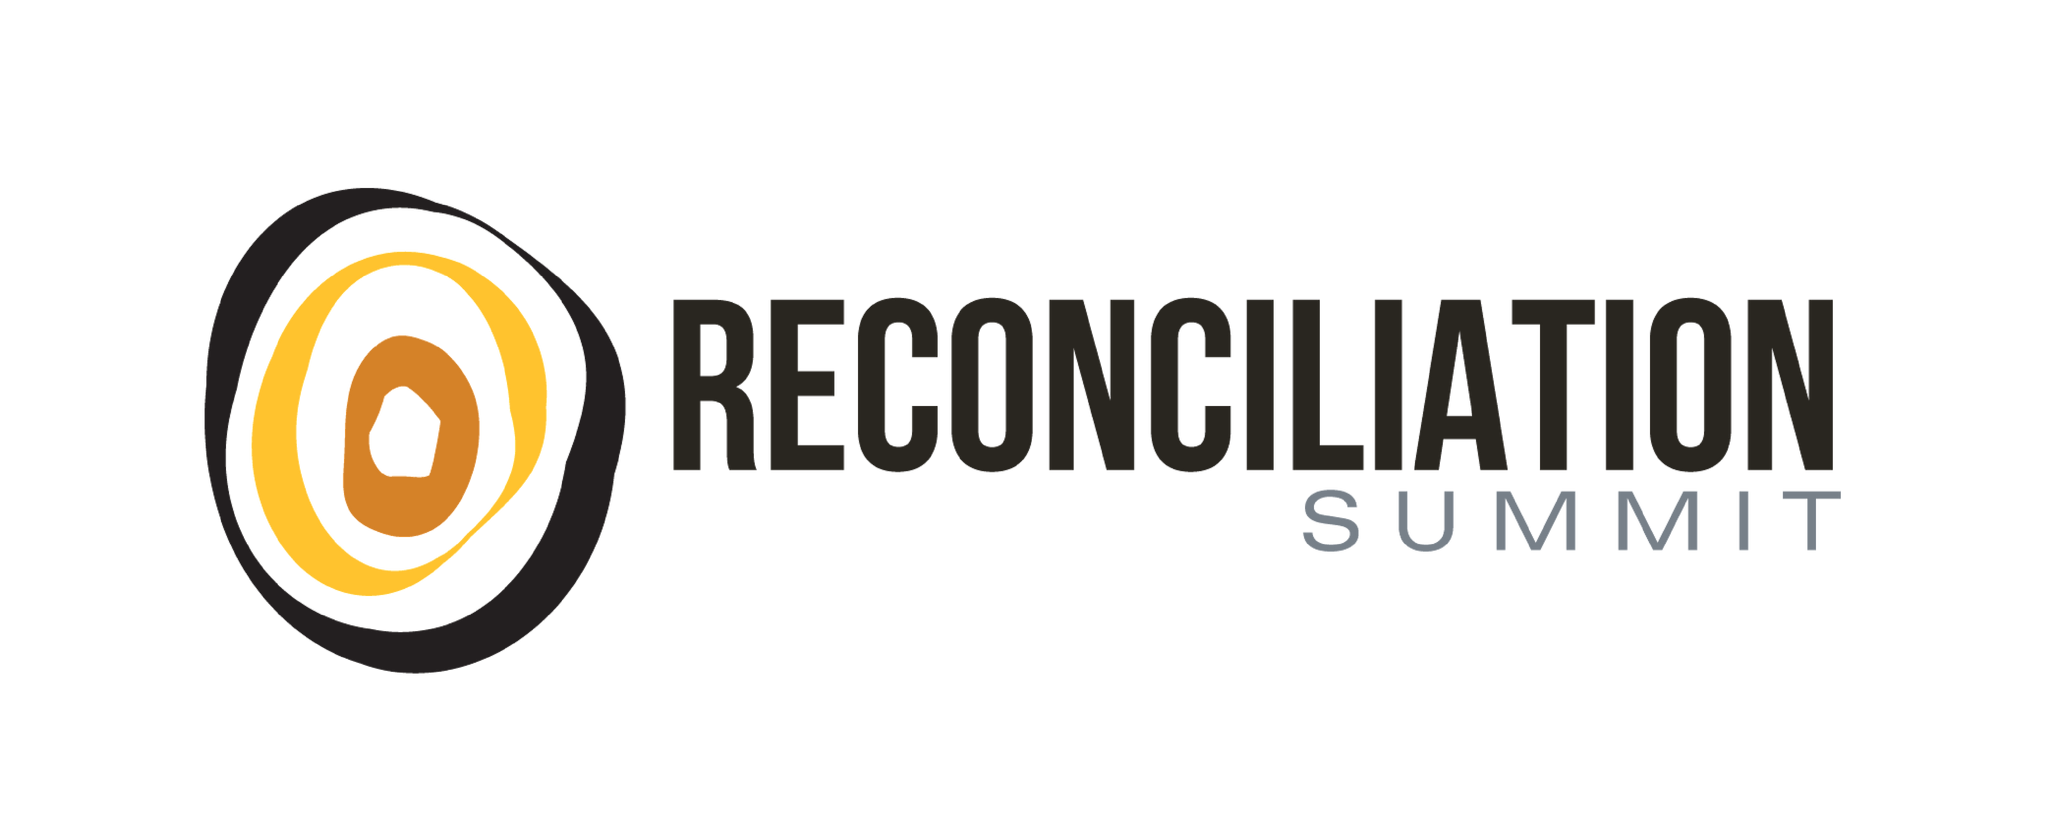 Sydney Build Reconciliation